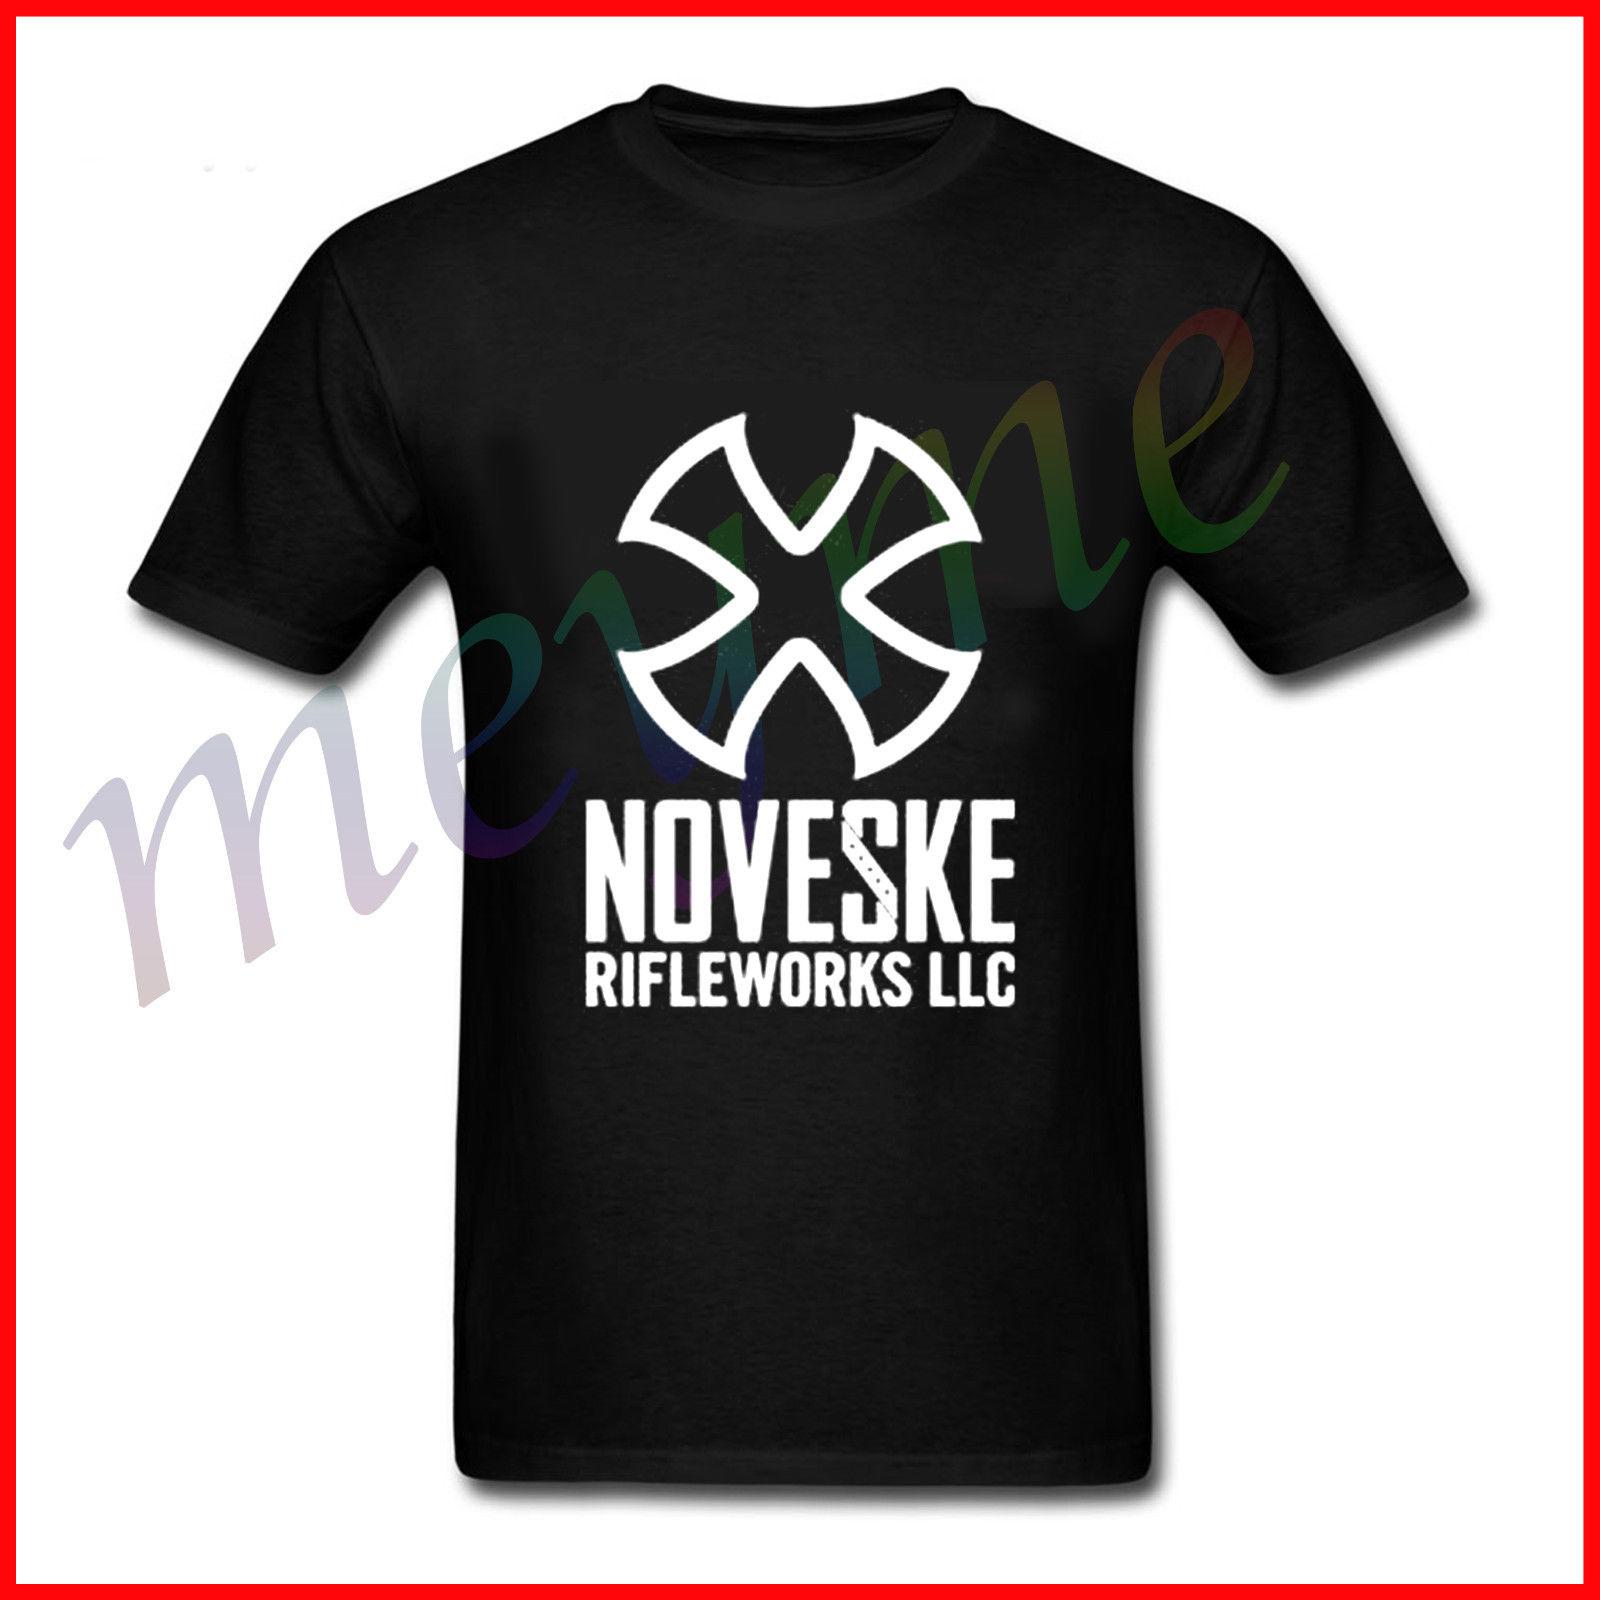 Noveske Logo - NEW 2017 Noveske Rifleworks LLC Logo T Shirt From US SIZE S M L Cool ...